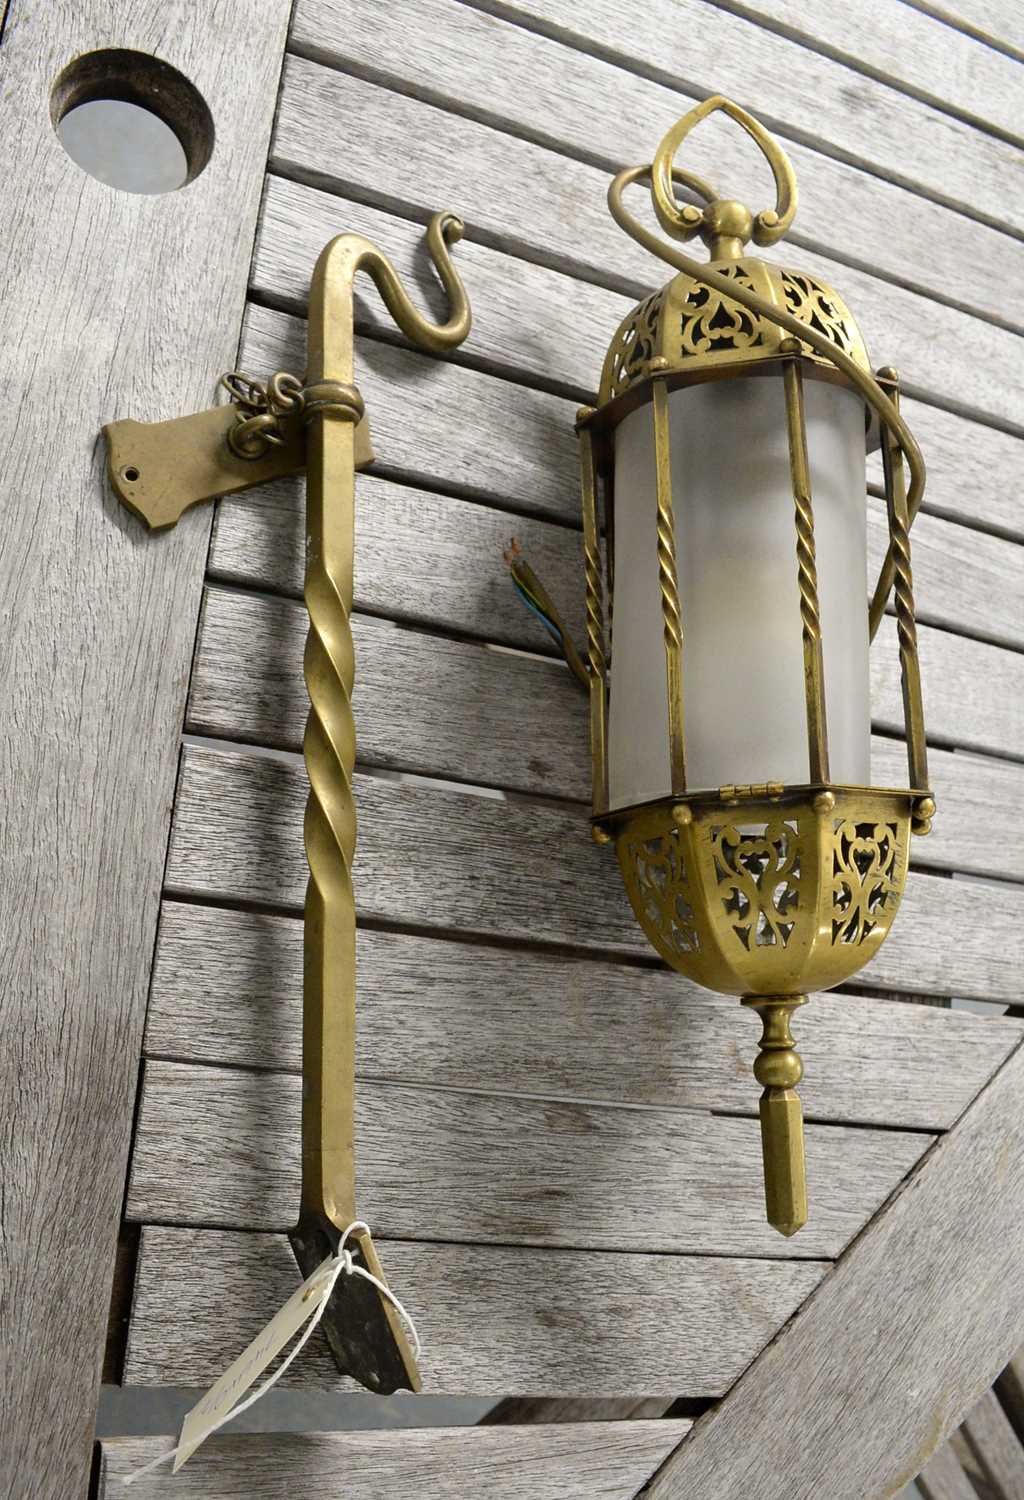 An Eastern brass lantern wall light